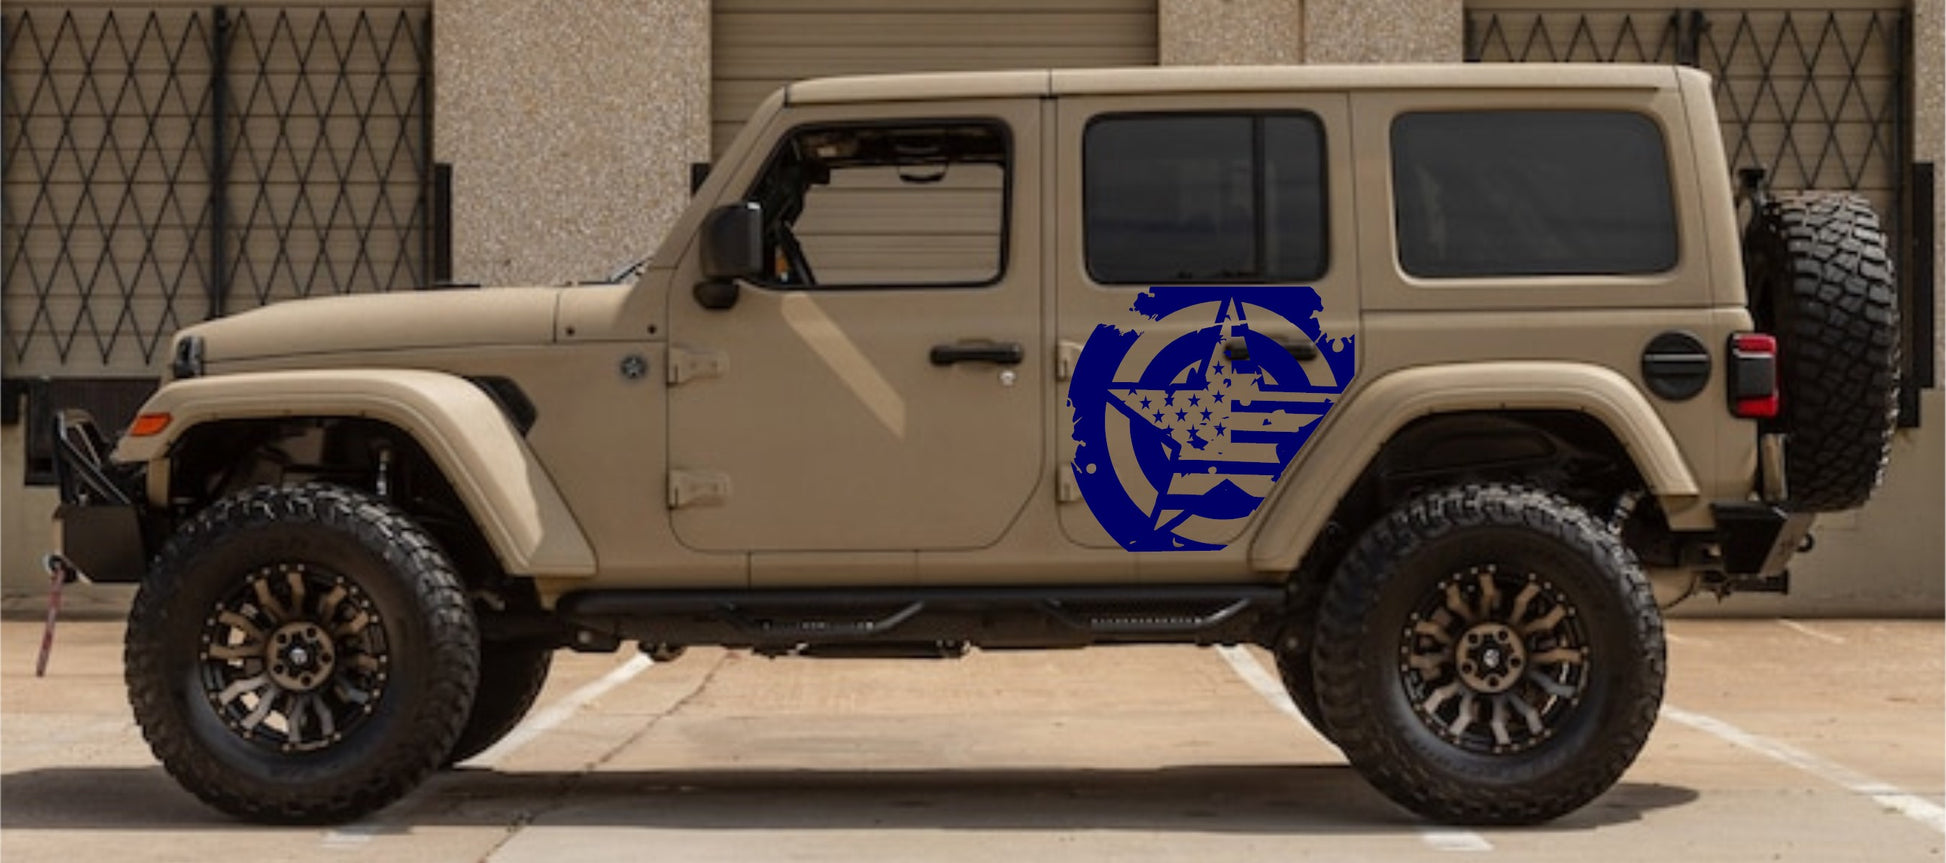 Set of Military Decal Star American Flag Decals Stickers Side Door Decals For Jeep Wrangler JL or JK 4-Door